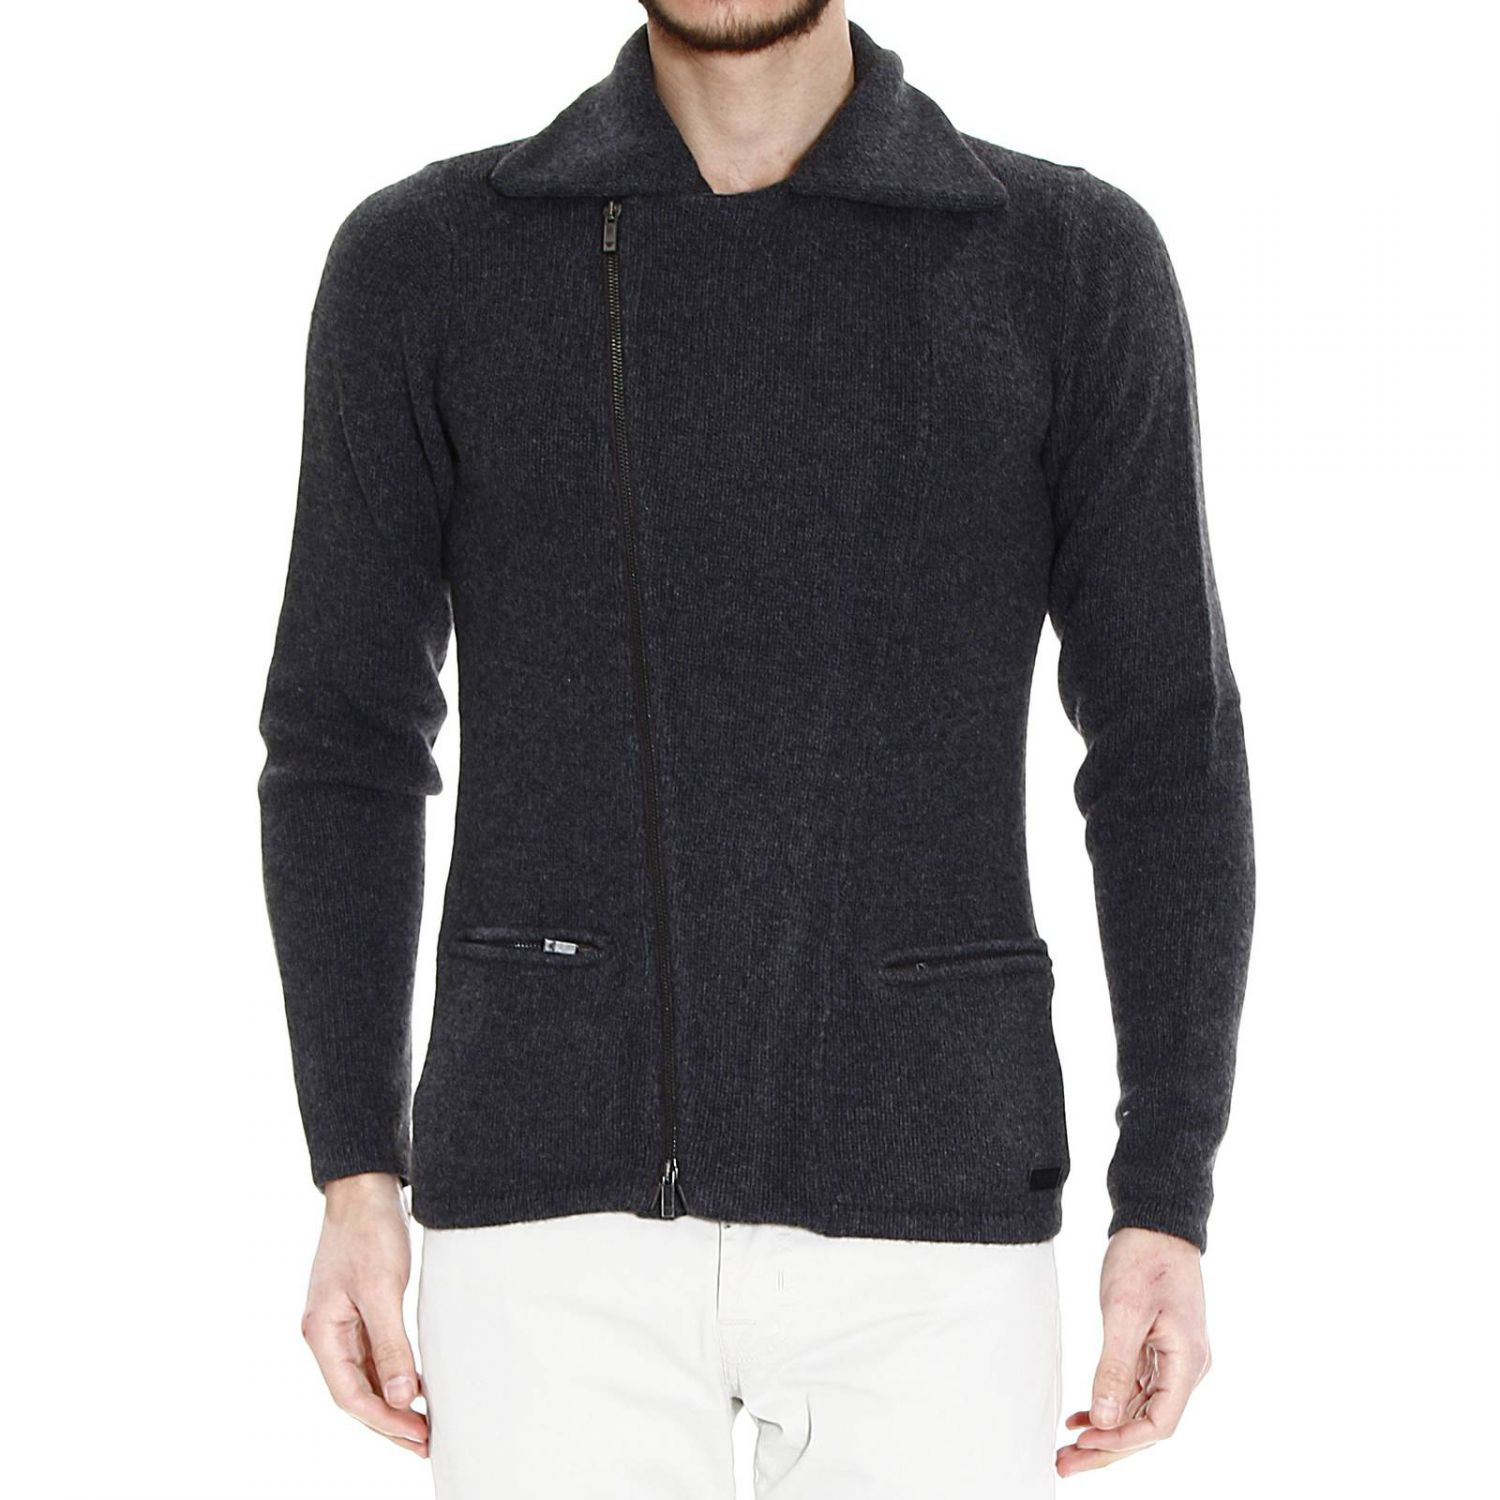 Lyst - Giorgio Armani Sweater Man in Gray for Men